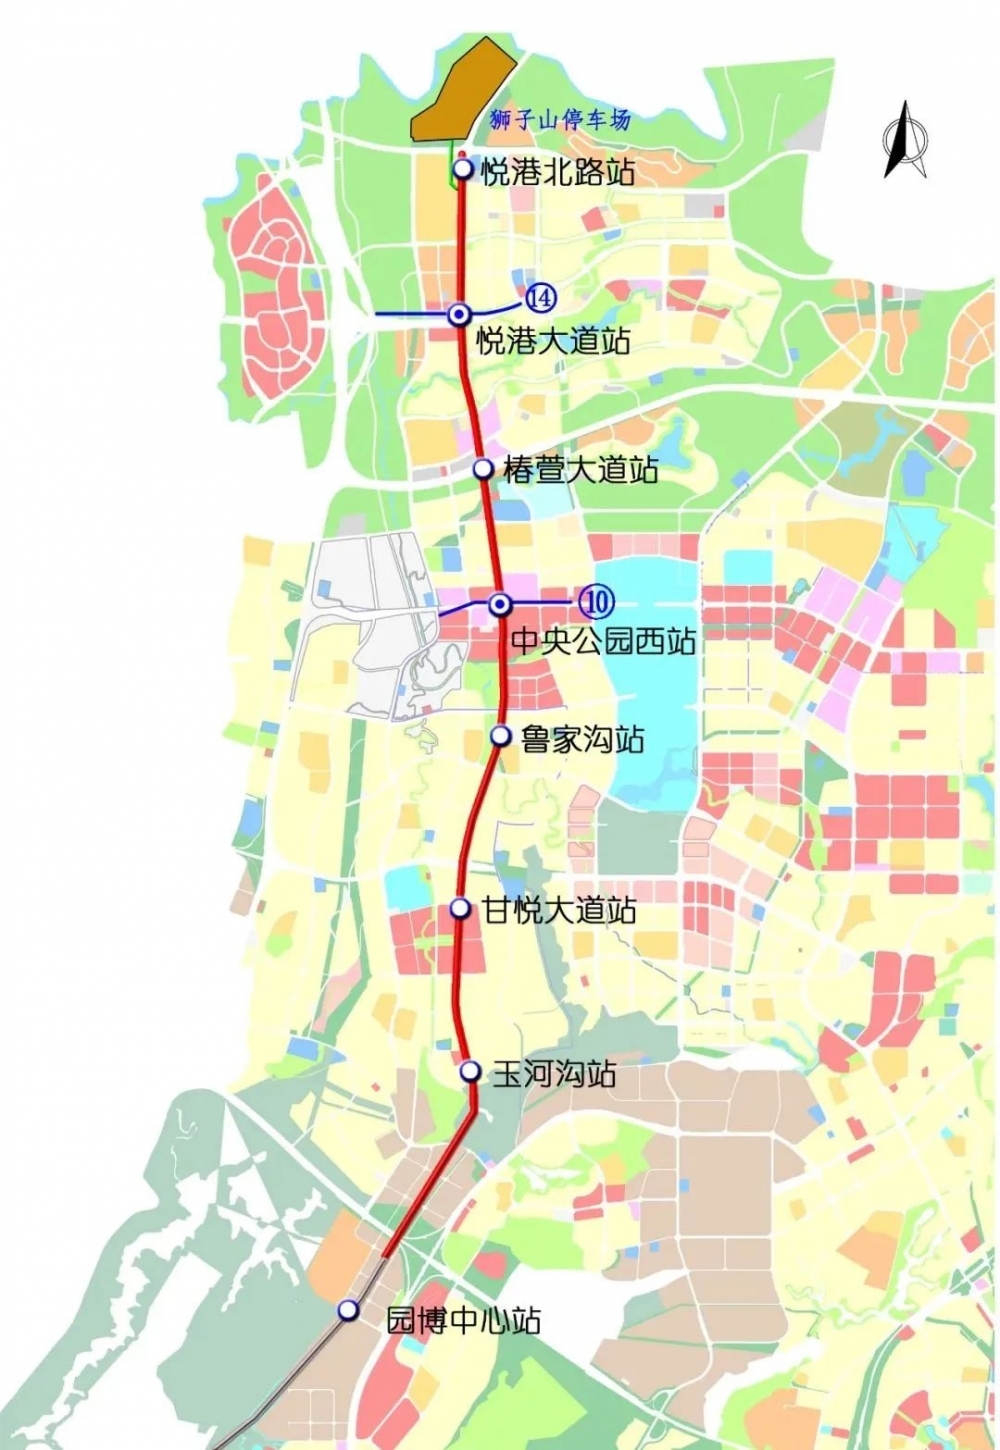 重庆轨道交通7号线一期计划年内开工 15号线,27号线计划2025年左右